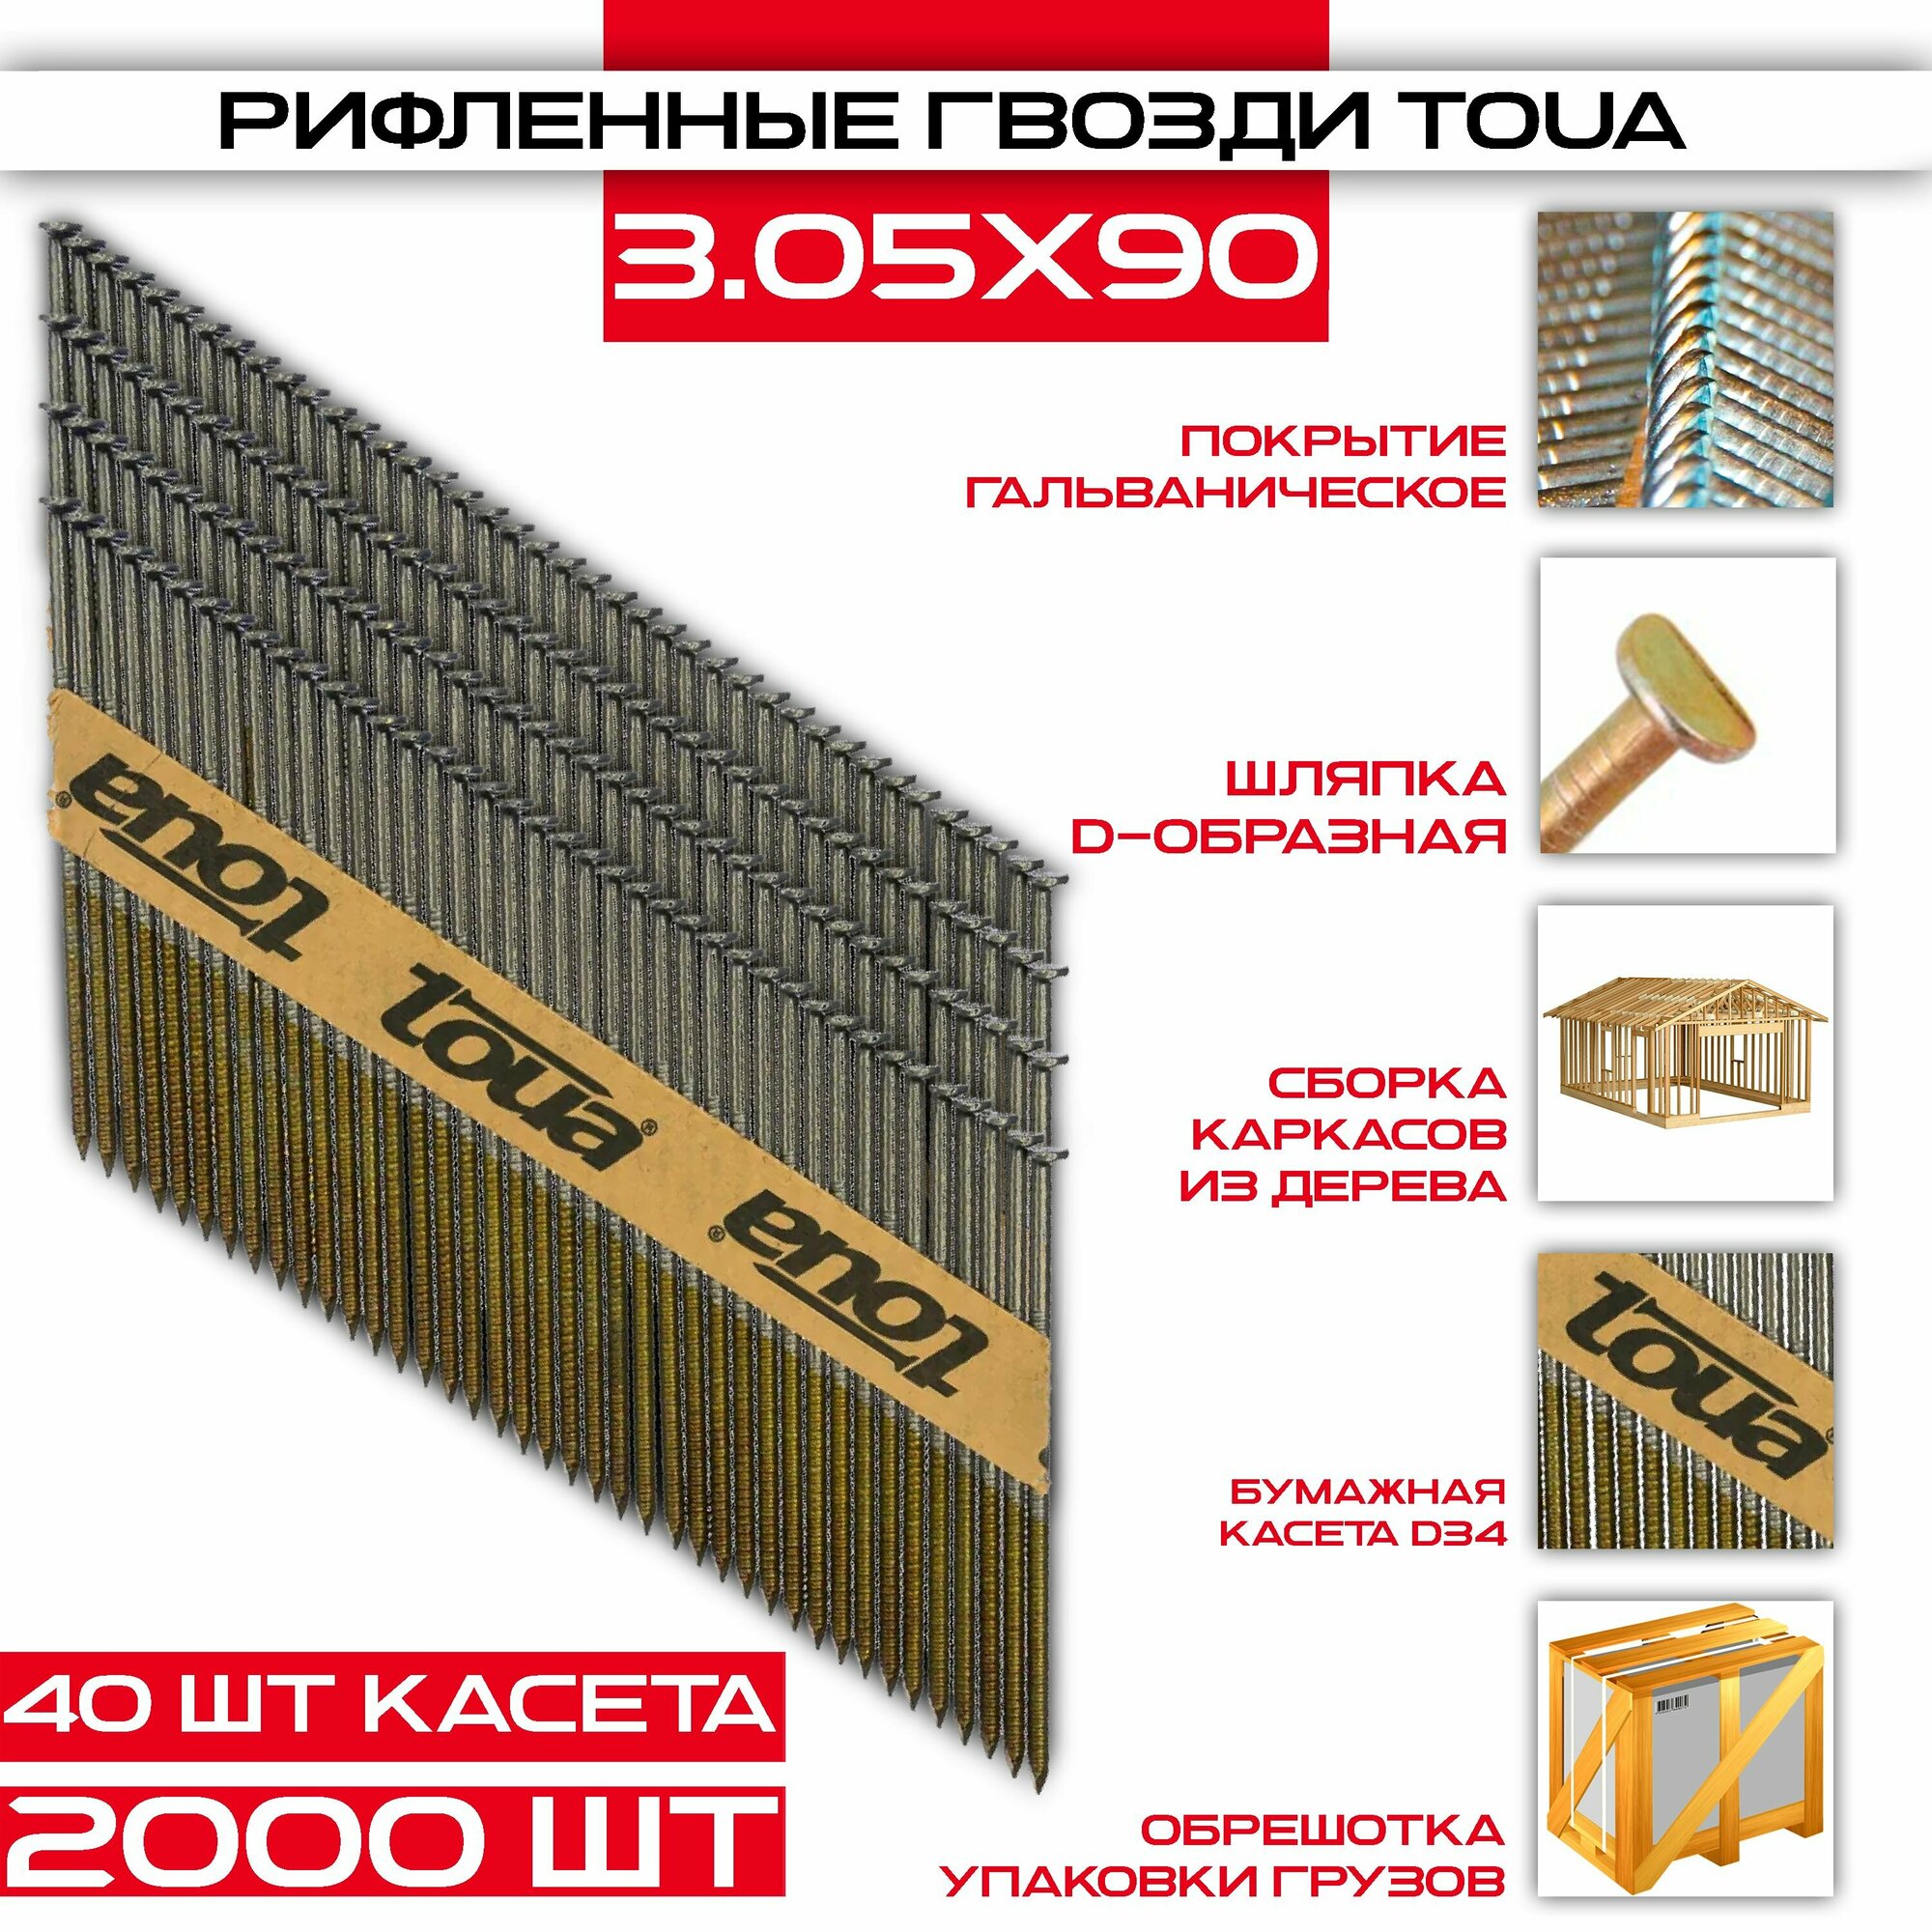 Гвозди строительные TOUA Ribrt 3,05х90мм, 2000 штук